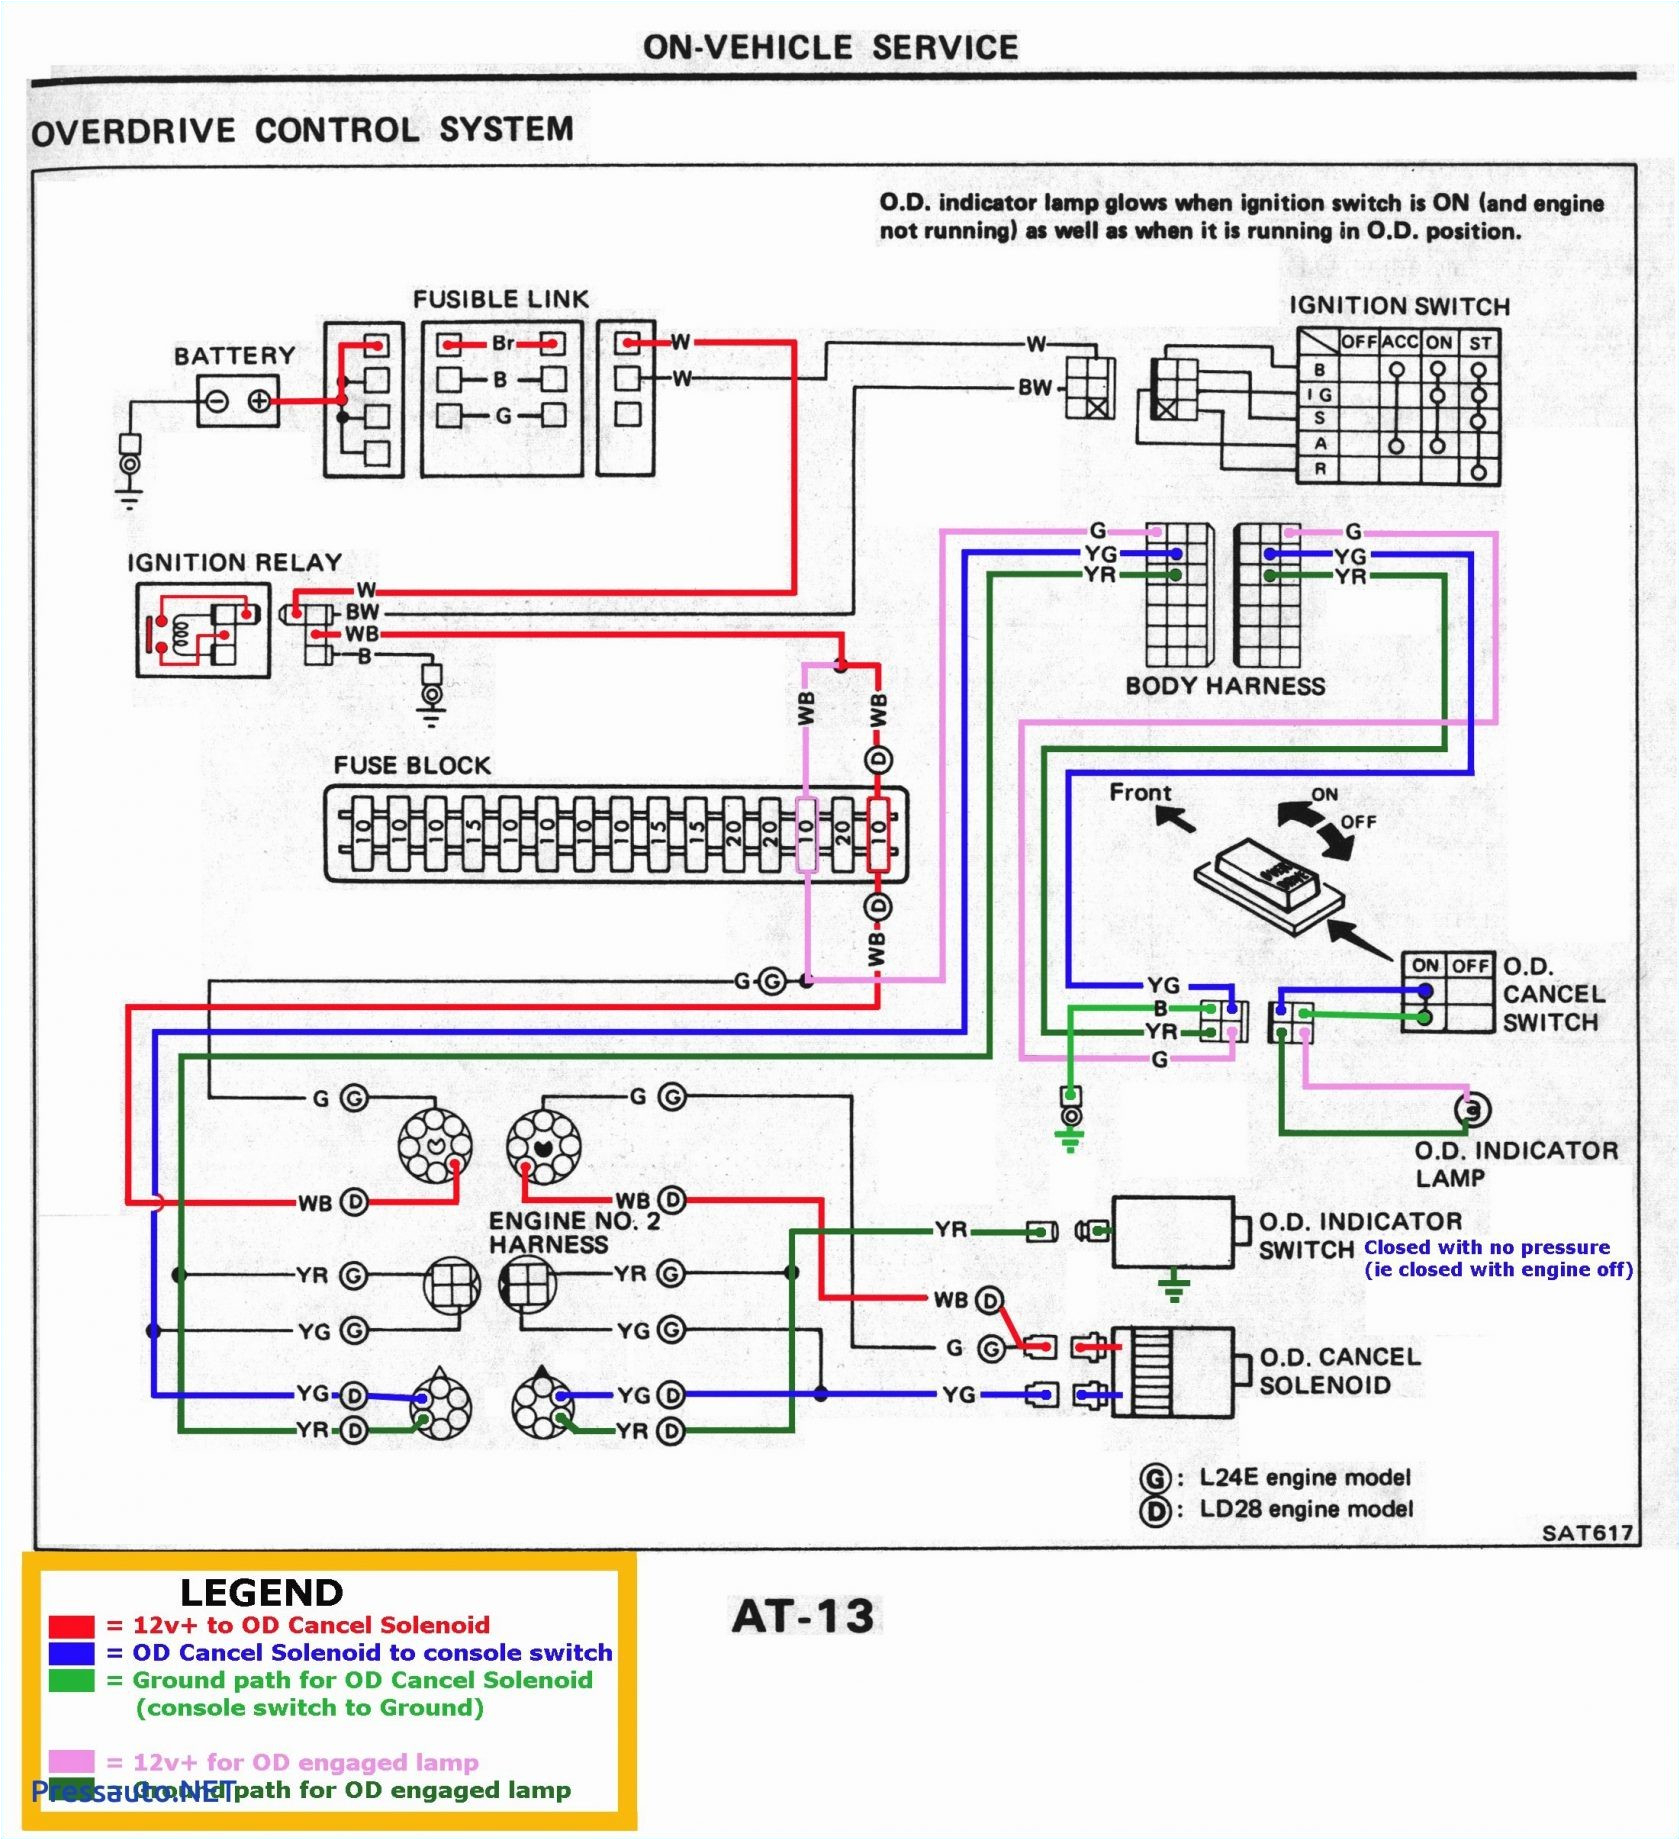 2016 Club Car Precedent Wiring Diagram 2008 Colorado Wiring Diagram Keju Repeat24 Klictravel Nl